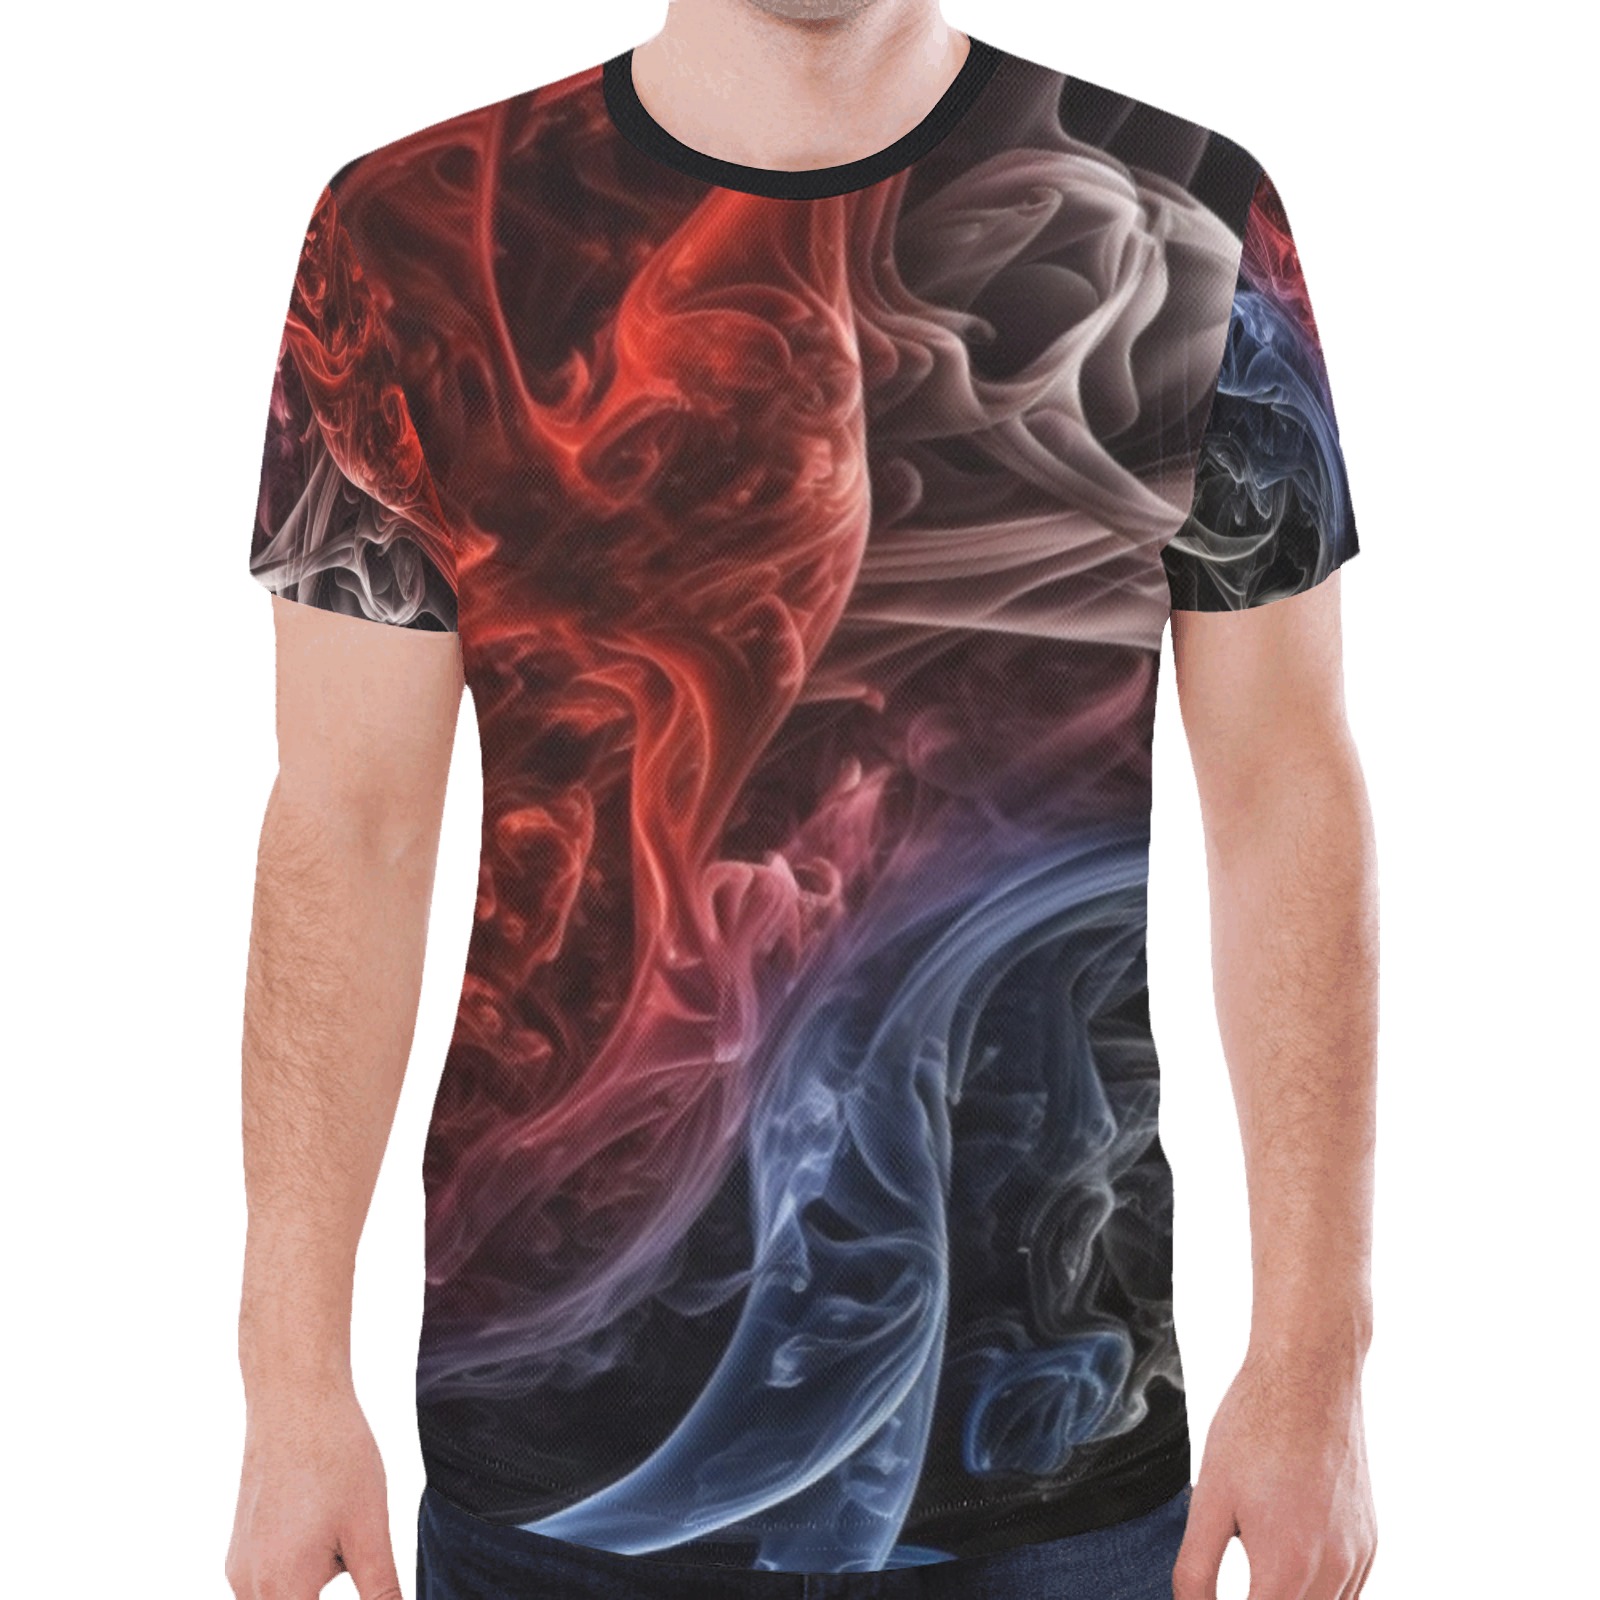 smoke shirt New All Over Print T-shirt for Men (Model T45)